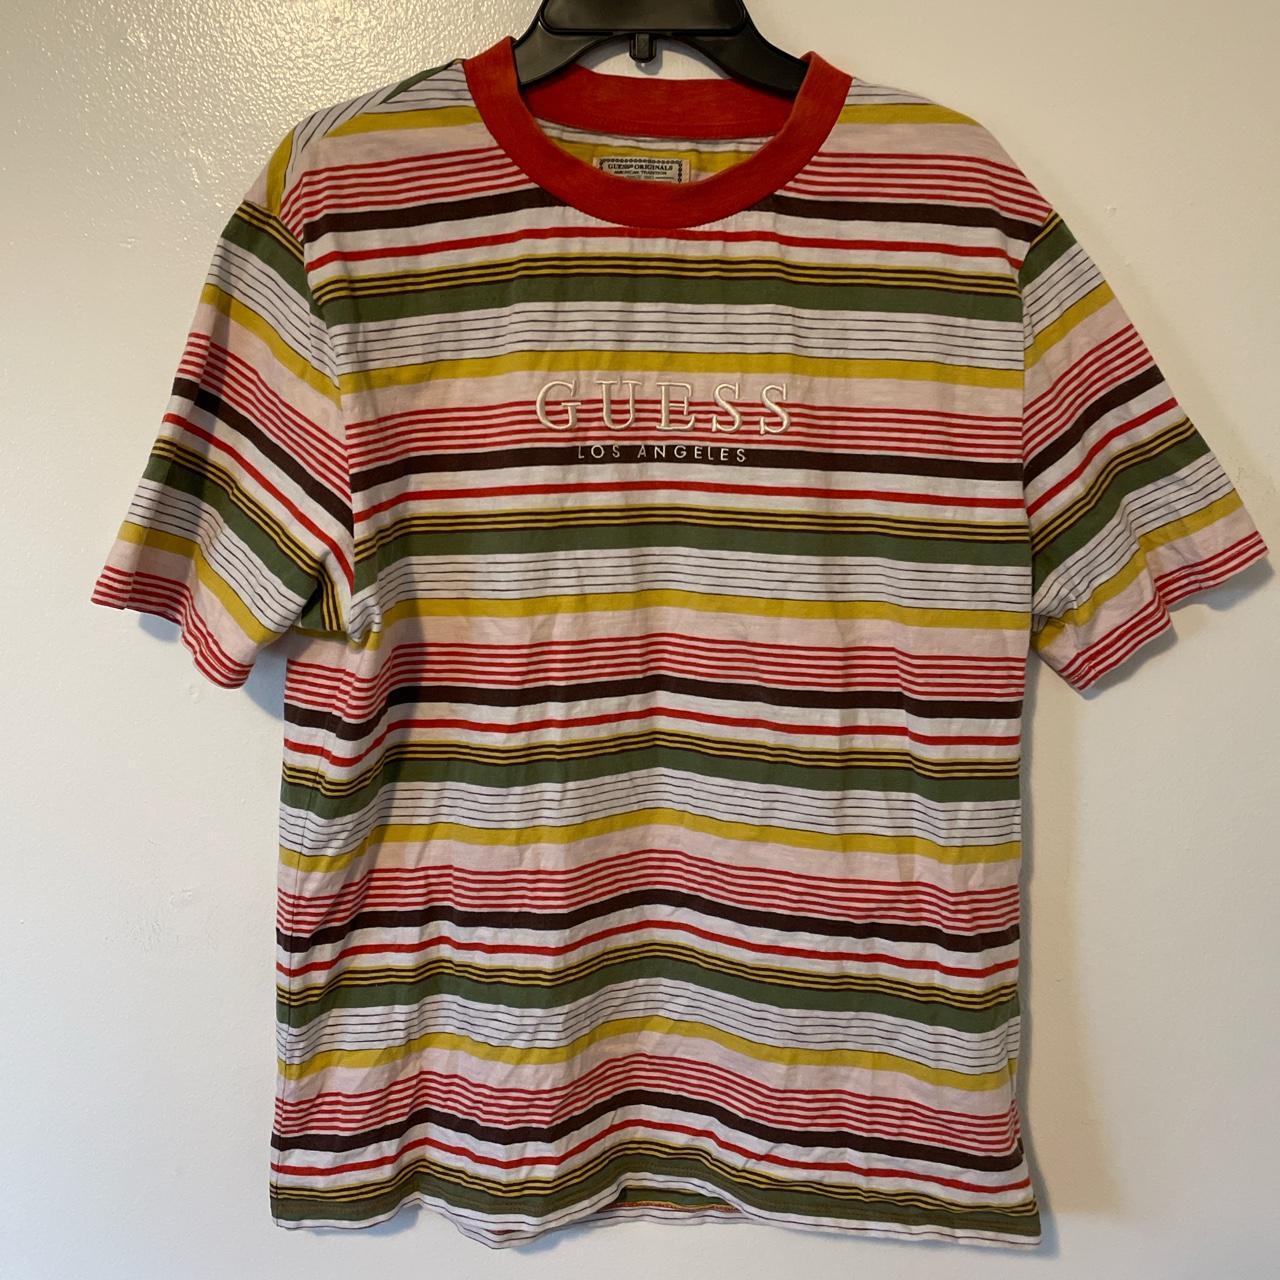 Guess shirt Size Medium #vintage #guess... - Depop